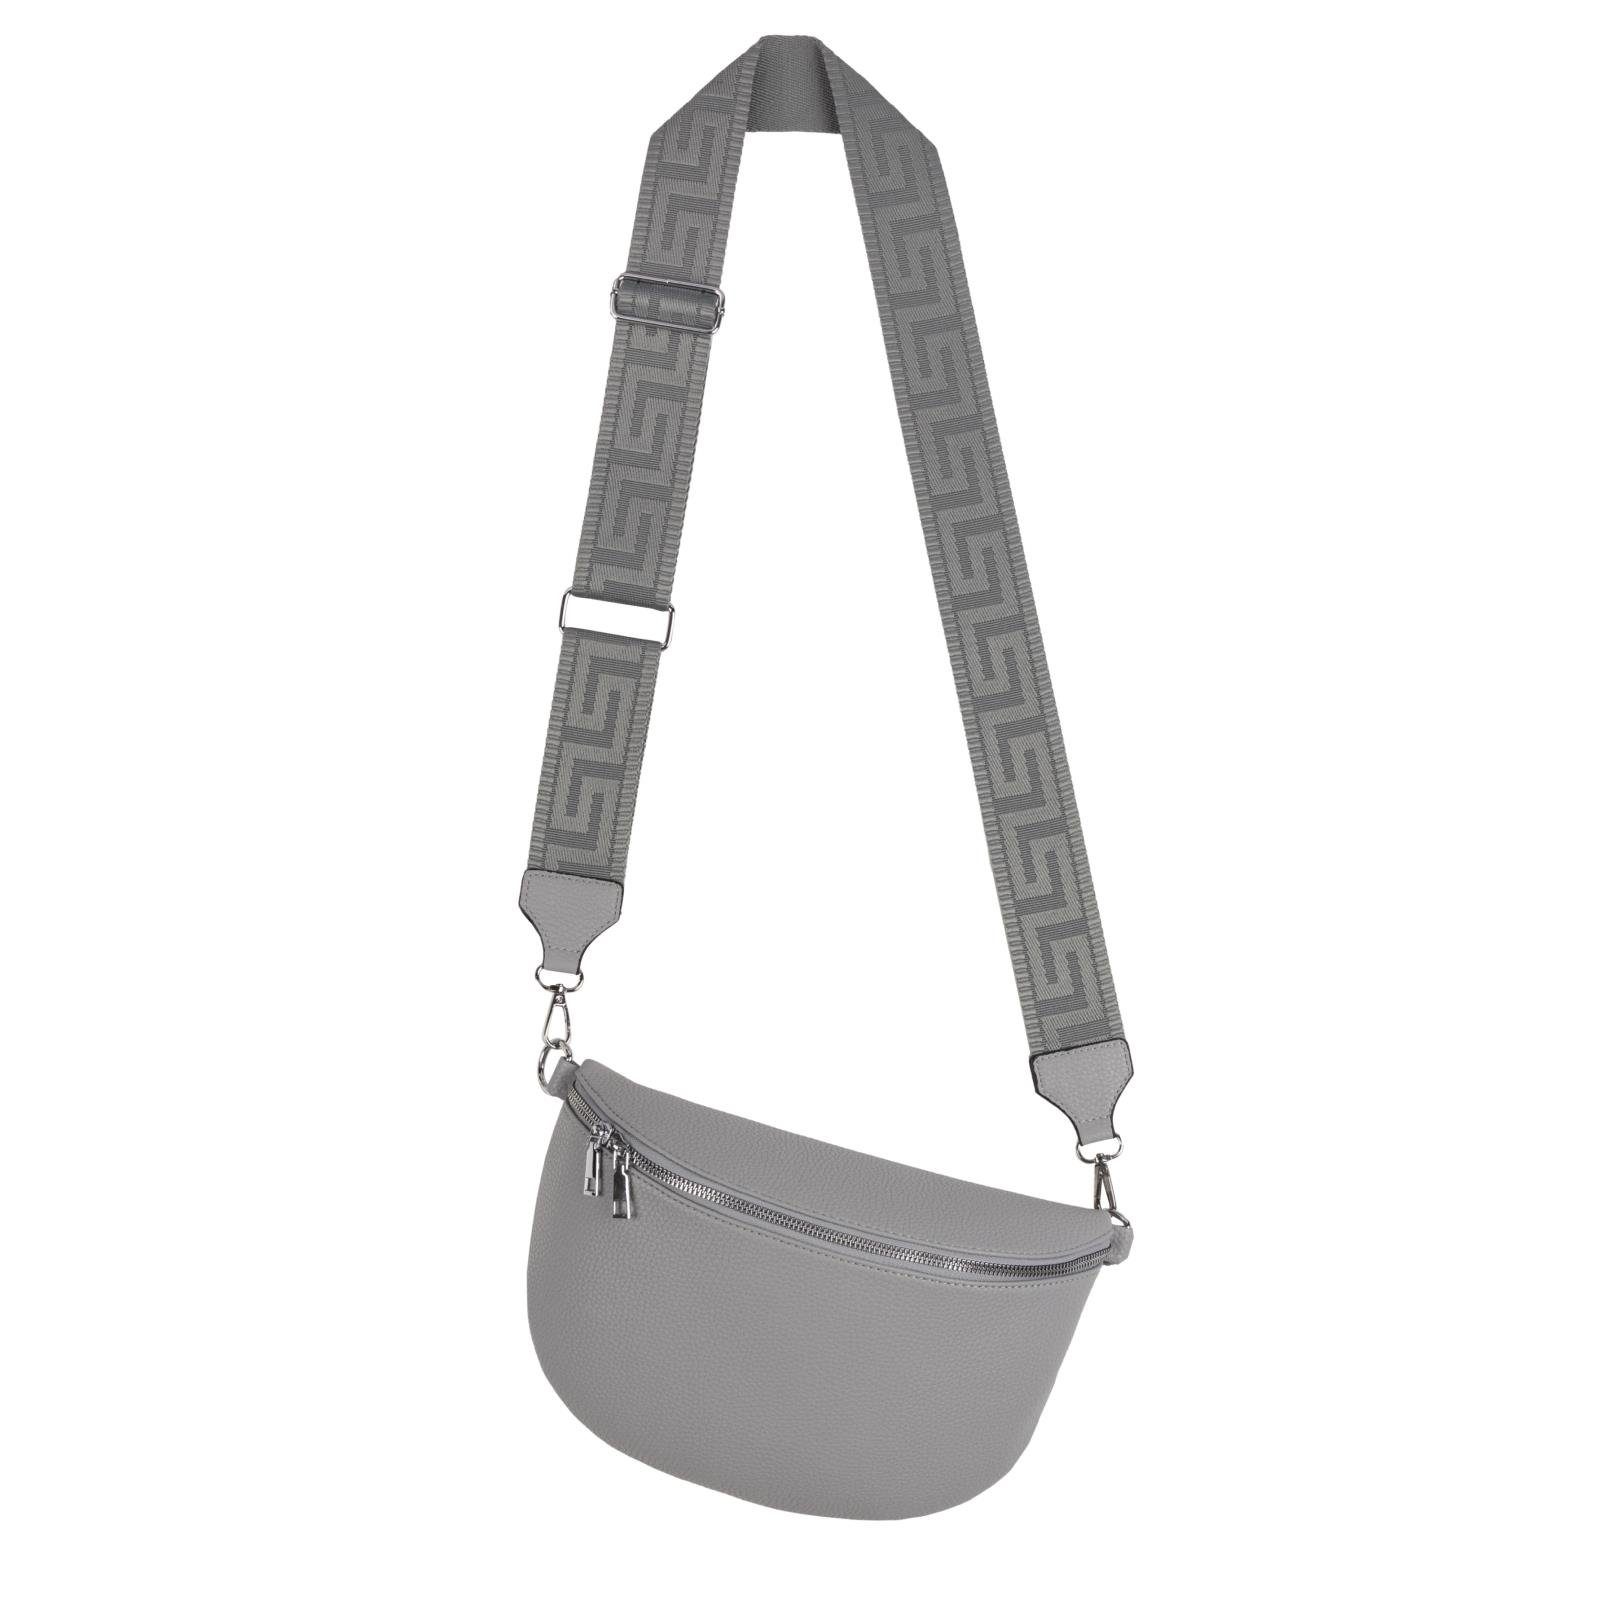 EAAKIE Gürteltasche Bauchtasche XL Umhängetasche Crossbody-Bag Hüfttasche Kunstleder Italy, als Schultertasche, CrossOver, Umhängetasche tragbar GREY